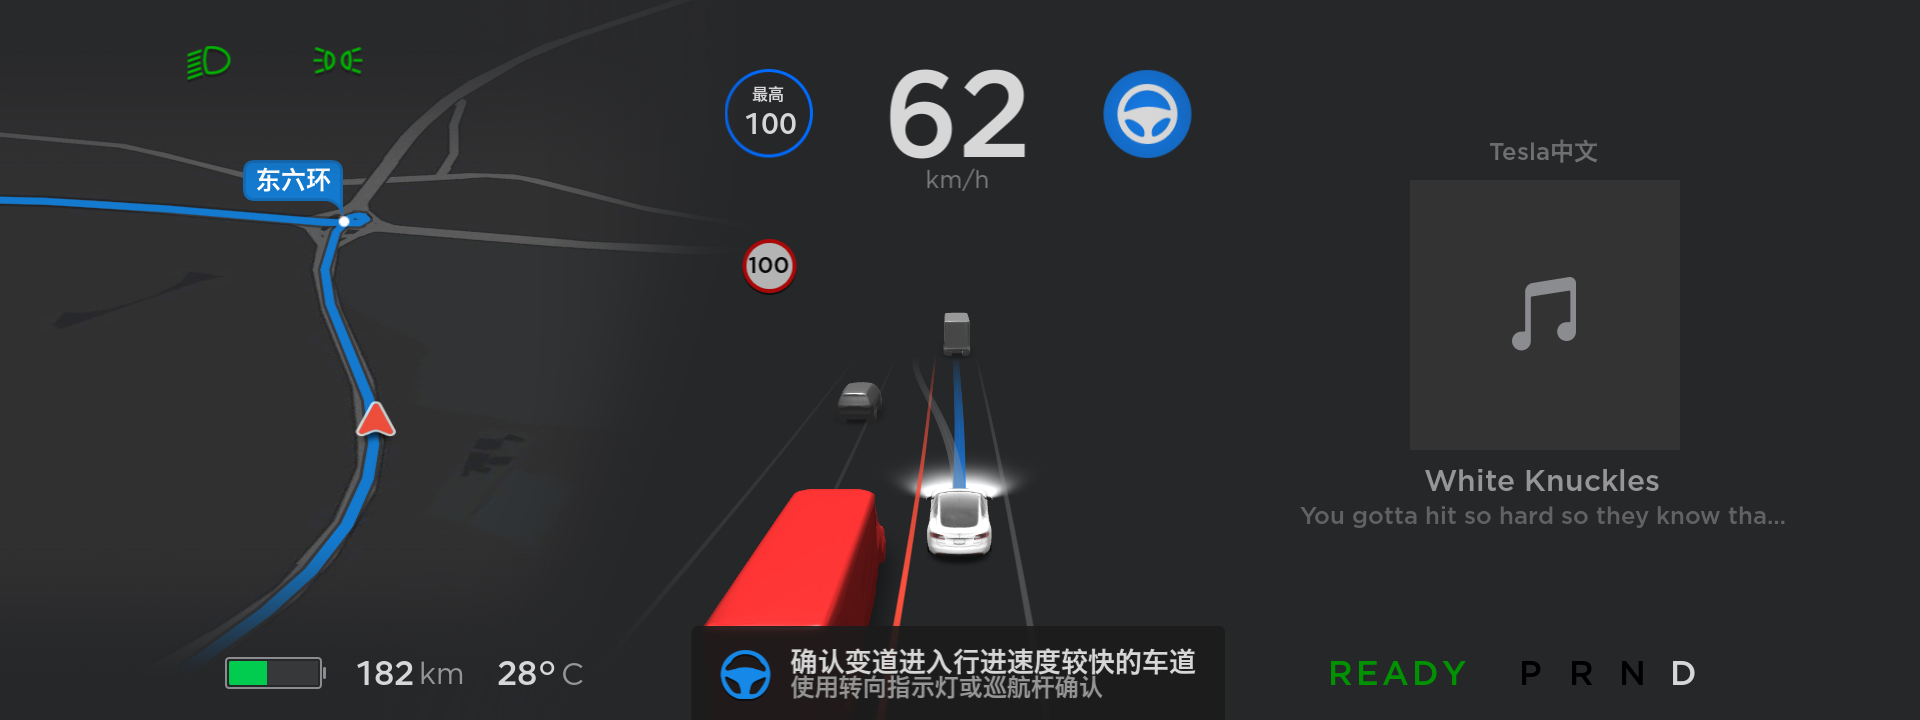 特斯拉在中国推送自动辅助导航驾驶功能